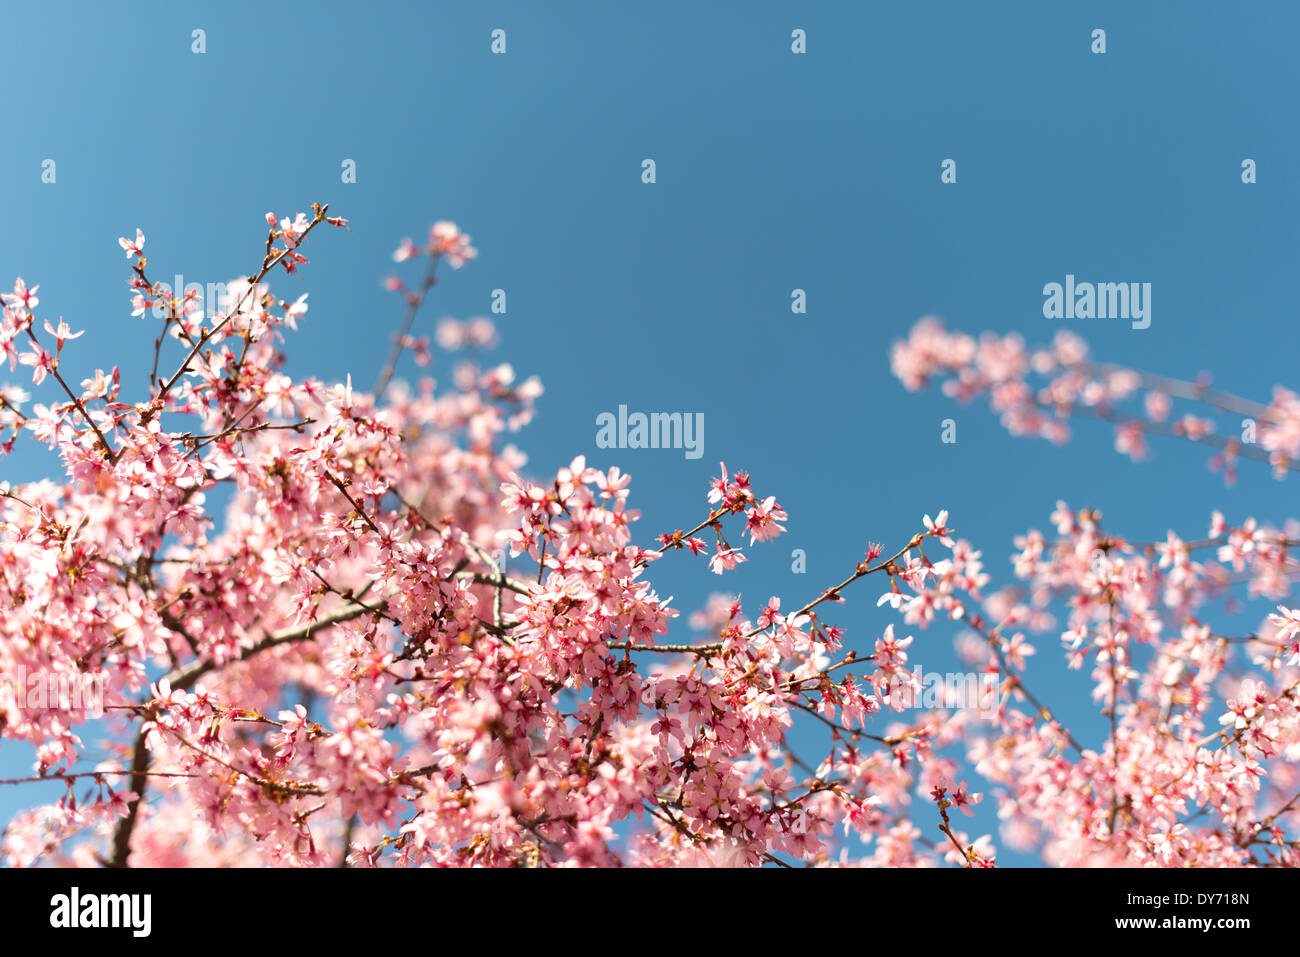 WASHINGTON DC, Stati Uniti d'America - splendide fioriture primaverili di fioritura ciliegio si stagliano contro un cielo blu chiaro in primavera. Prese con una profondità di campo ridotta con il fuoco selettivo. Foto Stock